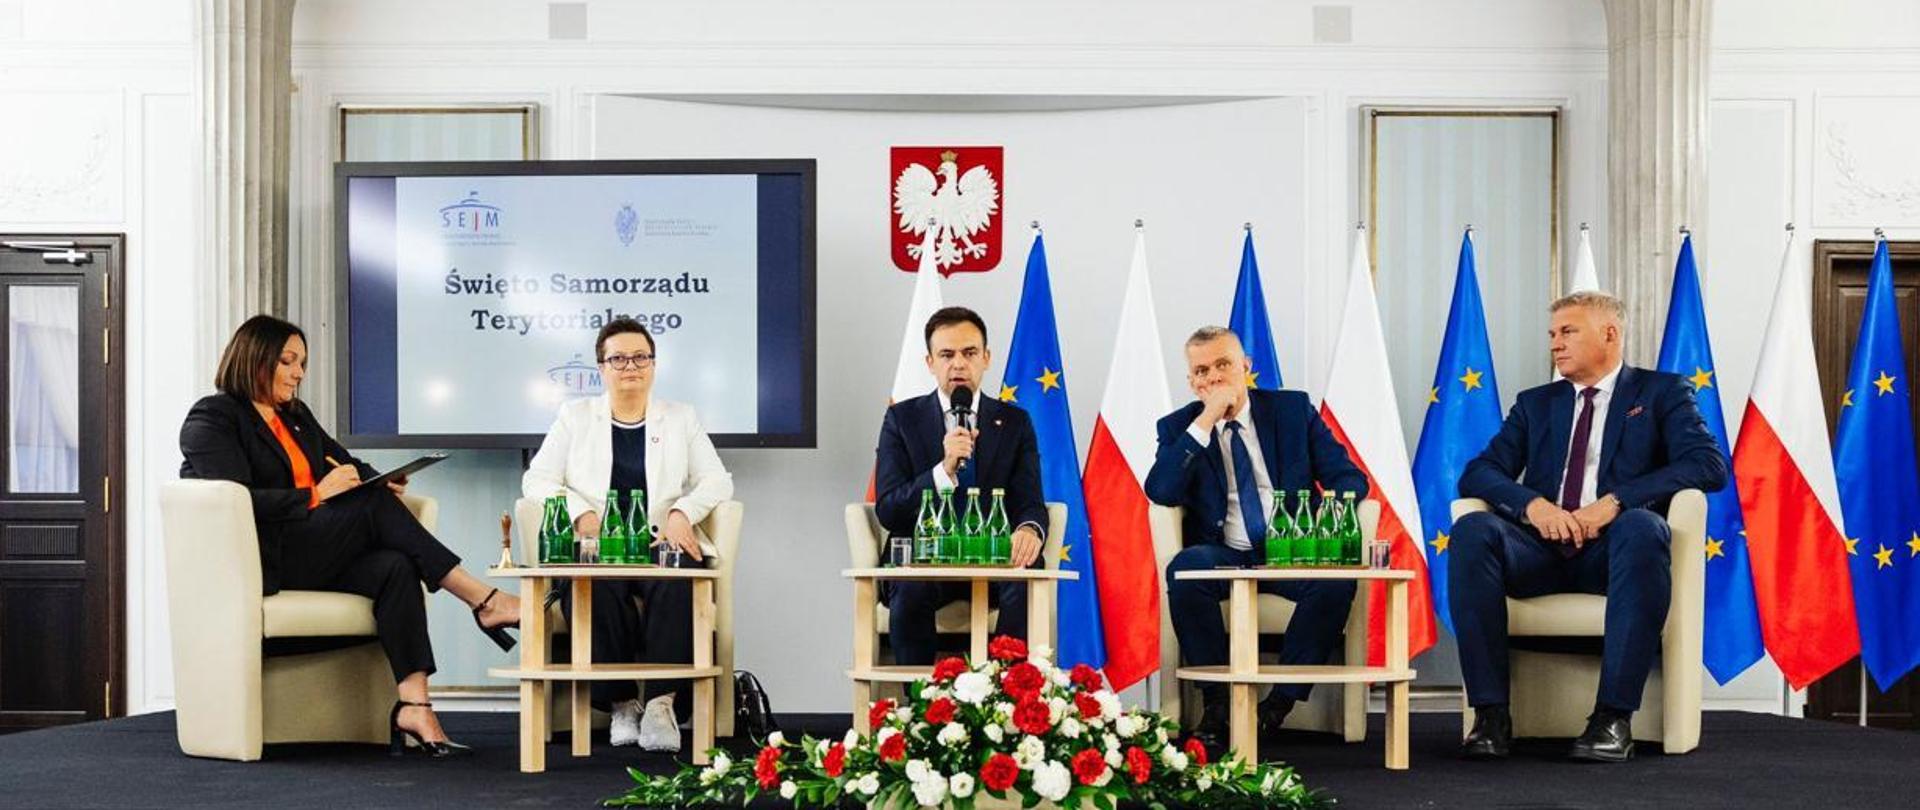 Minister finansów Andrzej Domański wraz z innymi uczestnikami konferencji w Sejmie